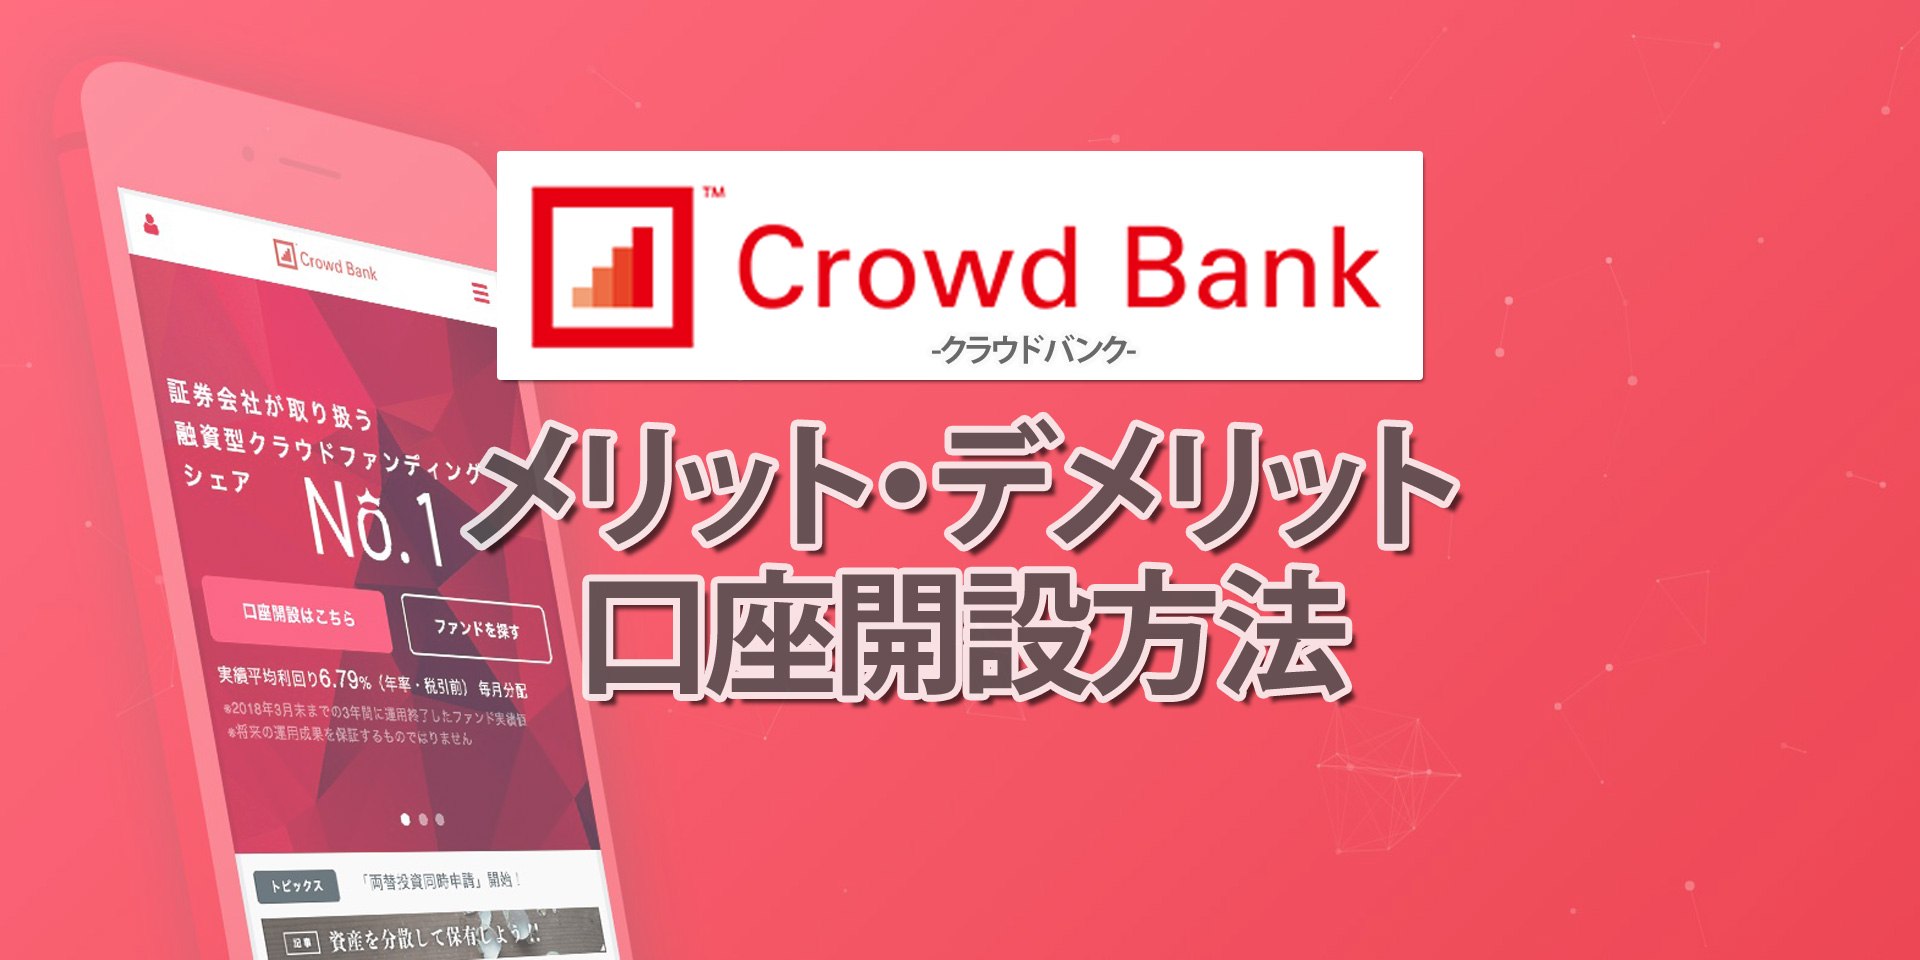 クラウドバンク(Crowd Bank)とは？特徴やメリット・デメリット、口座開設方法などを解説！